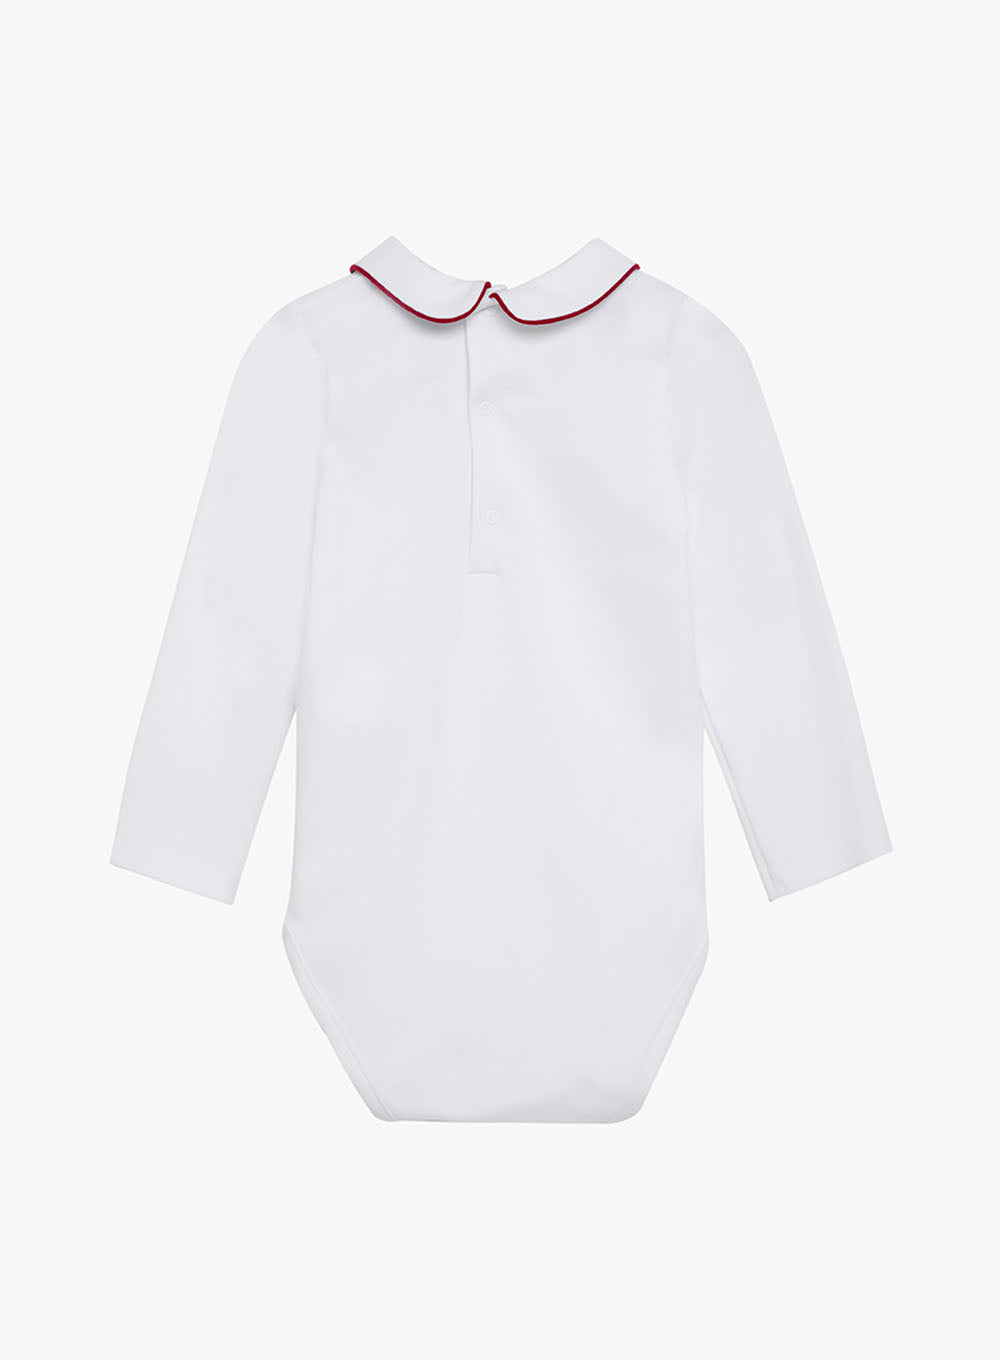 Little Long Sleeved Milo Bodysuit in White/Red